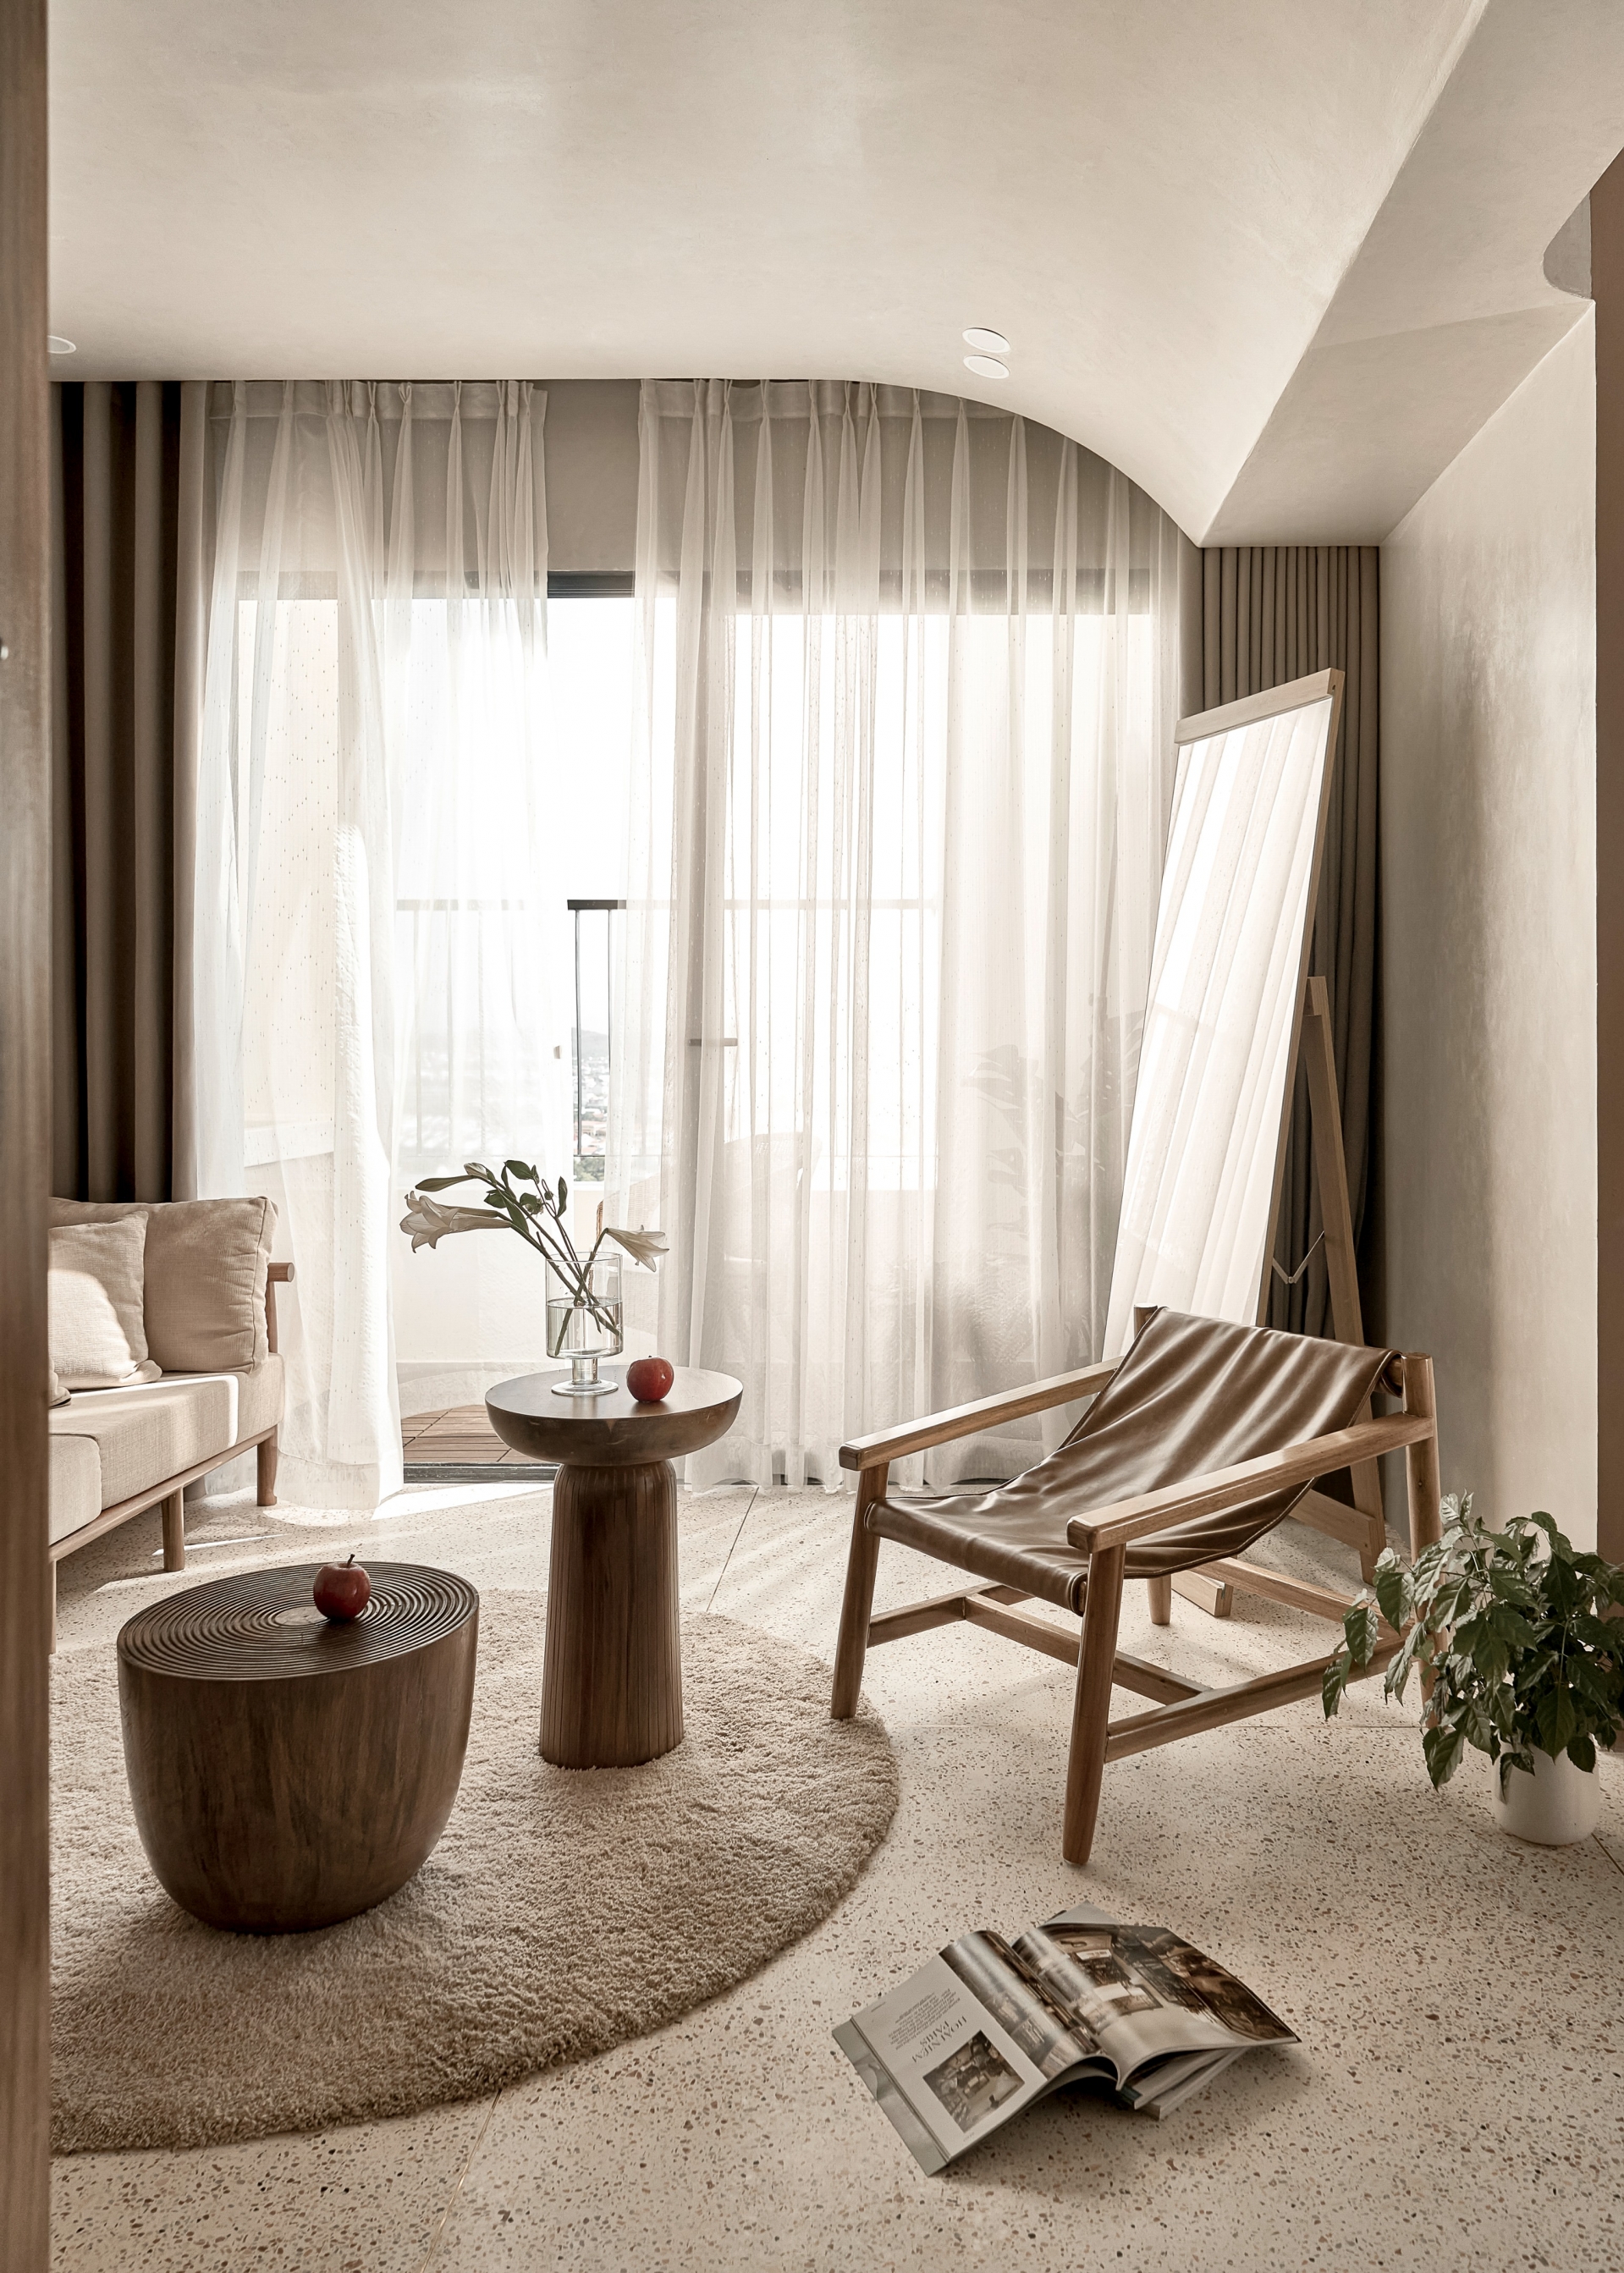 Căn hộ với gam màu nâu nhạt và màu be ấm áp, những đường cong mềm mại trong thiết kế nội thất kết hợp vật liệu chính là đá Terrazzo lát sàn cũng như ốp nội thất.